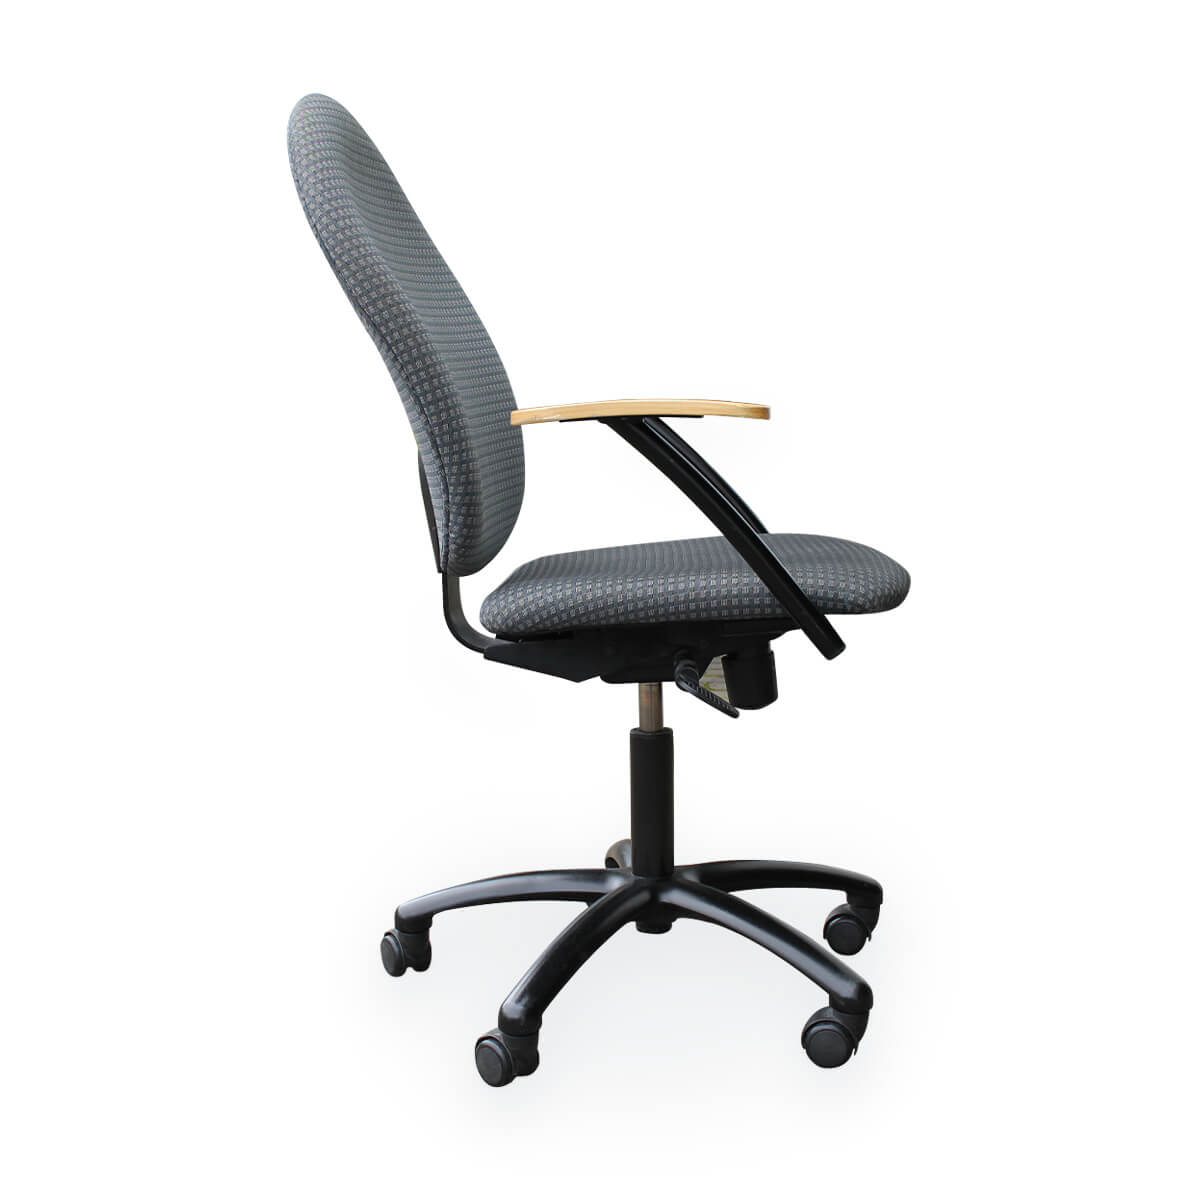 Naudotos biuro kėdės - Nowy Styl - Top star